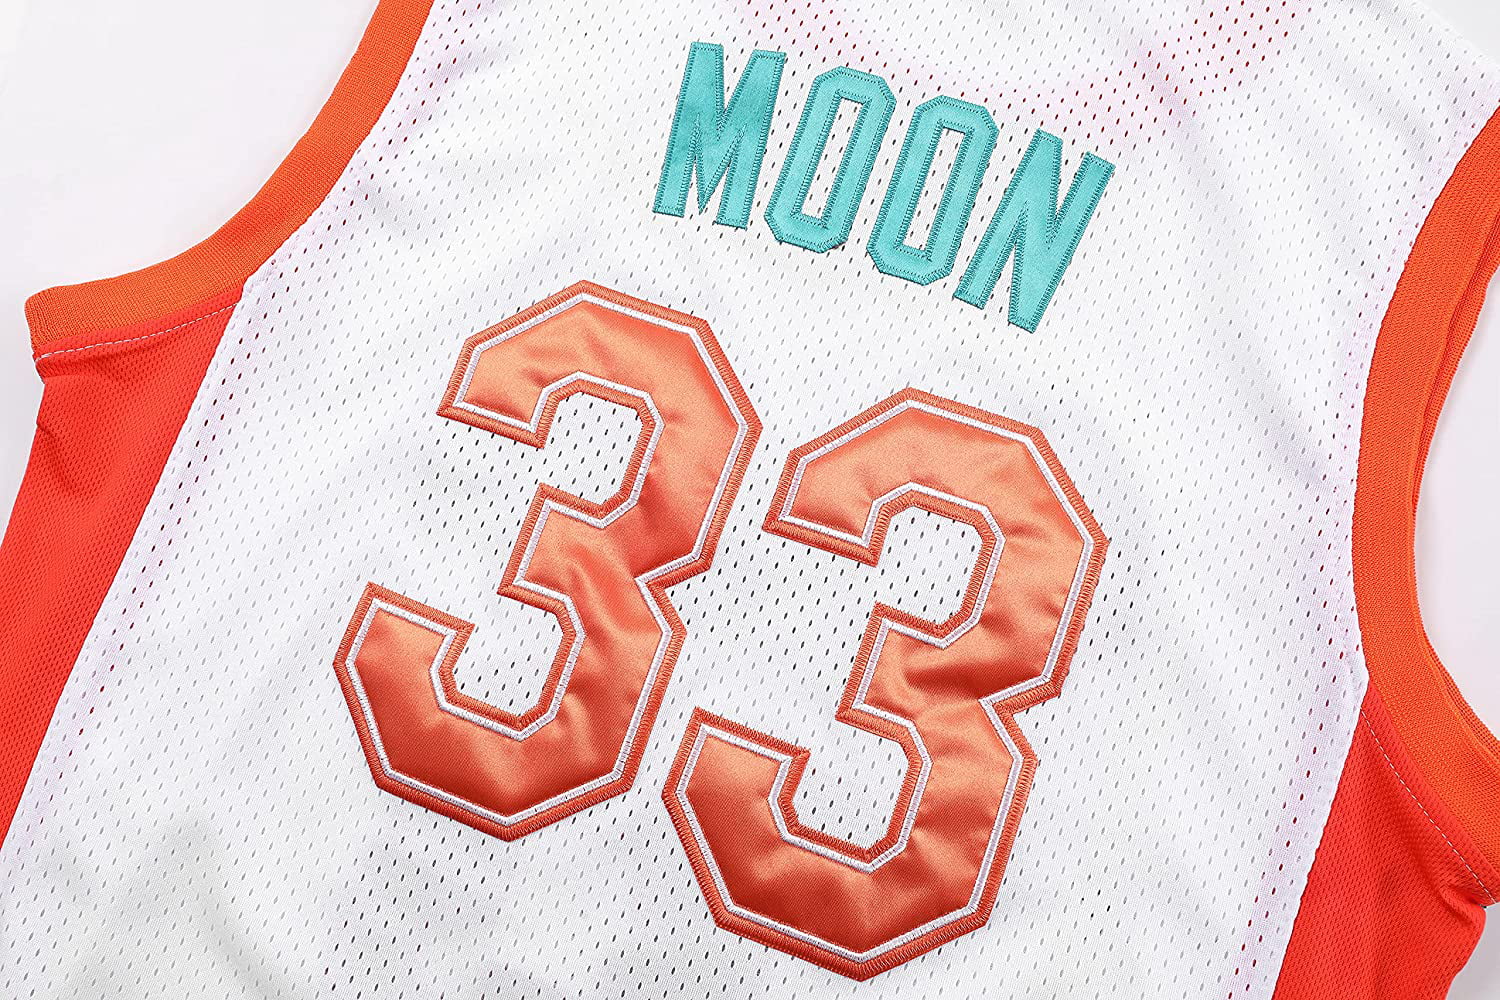 Jackie Moon Jersey - Licensed Semi-Pro Flint Tropics #33 Moon Jersey